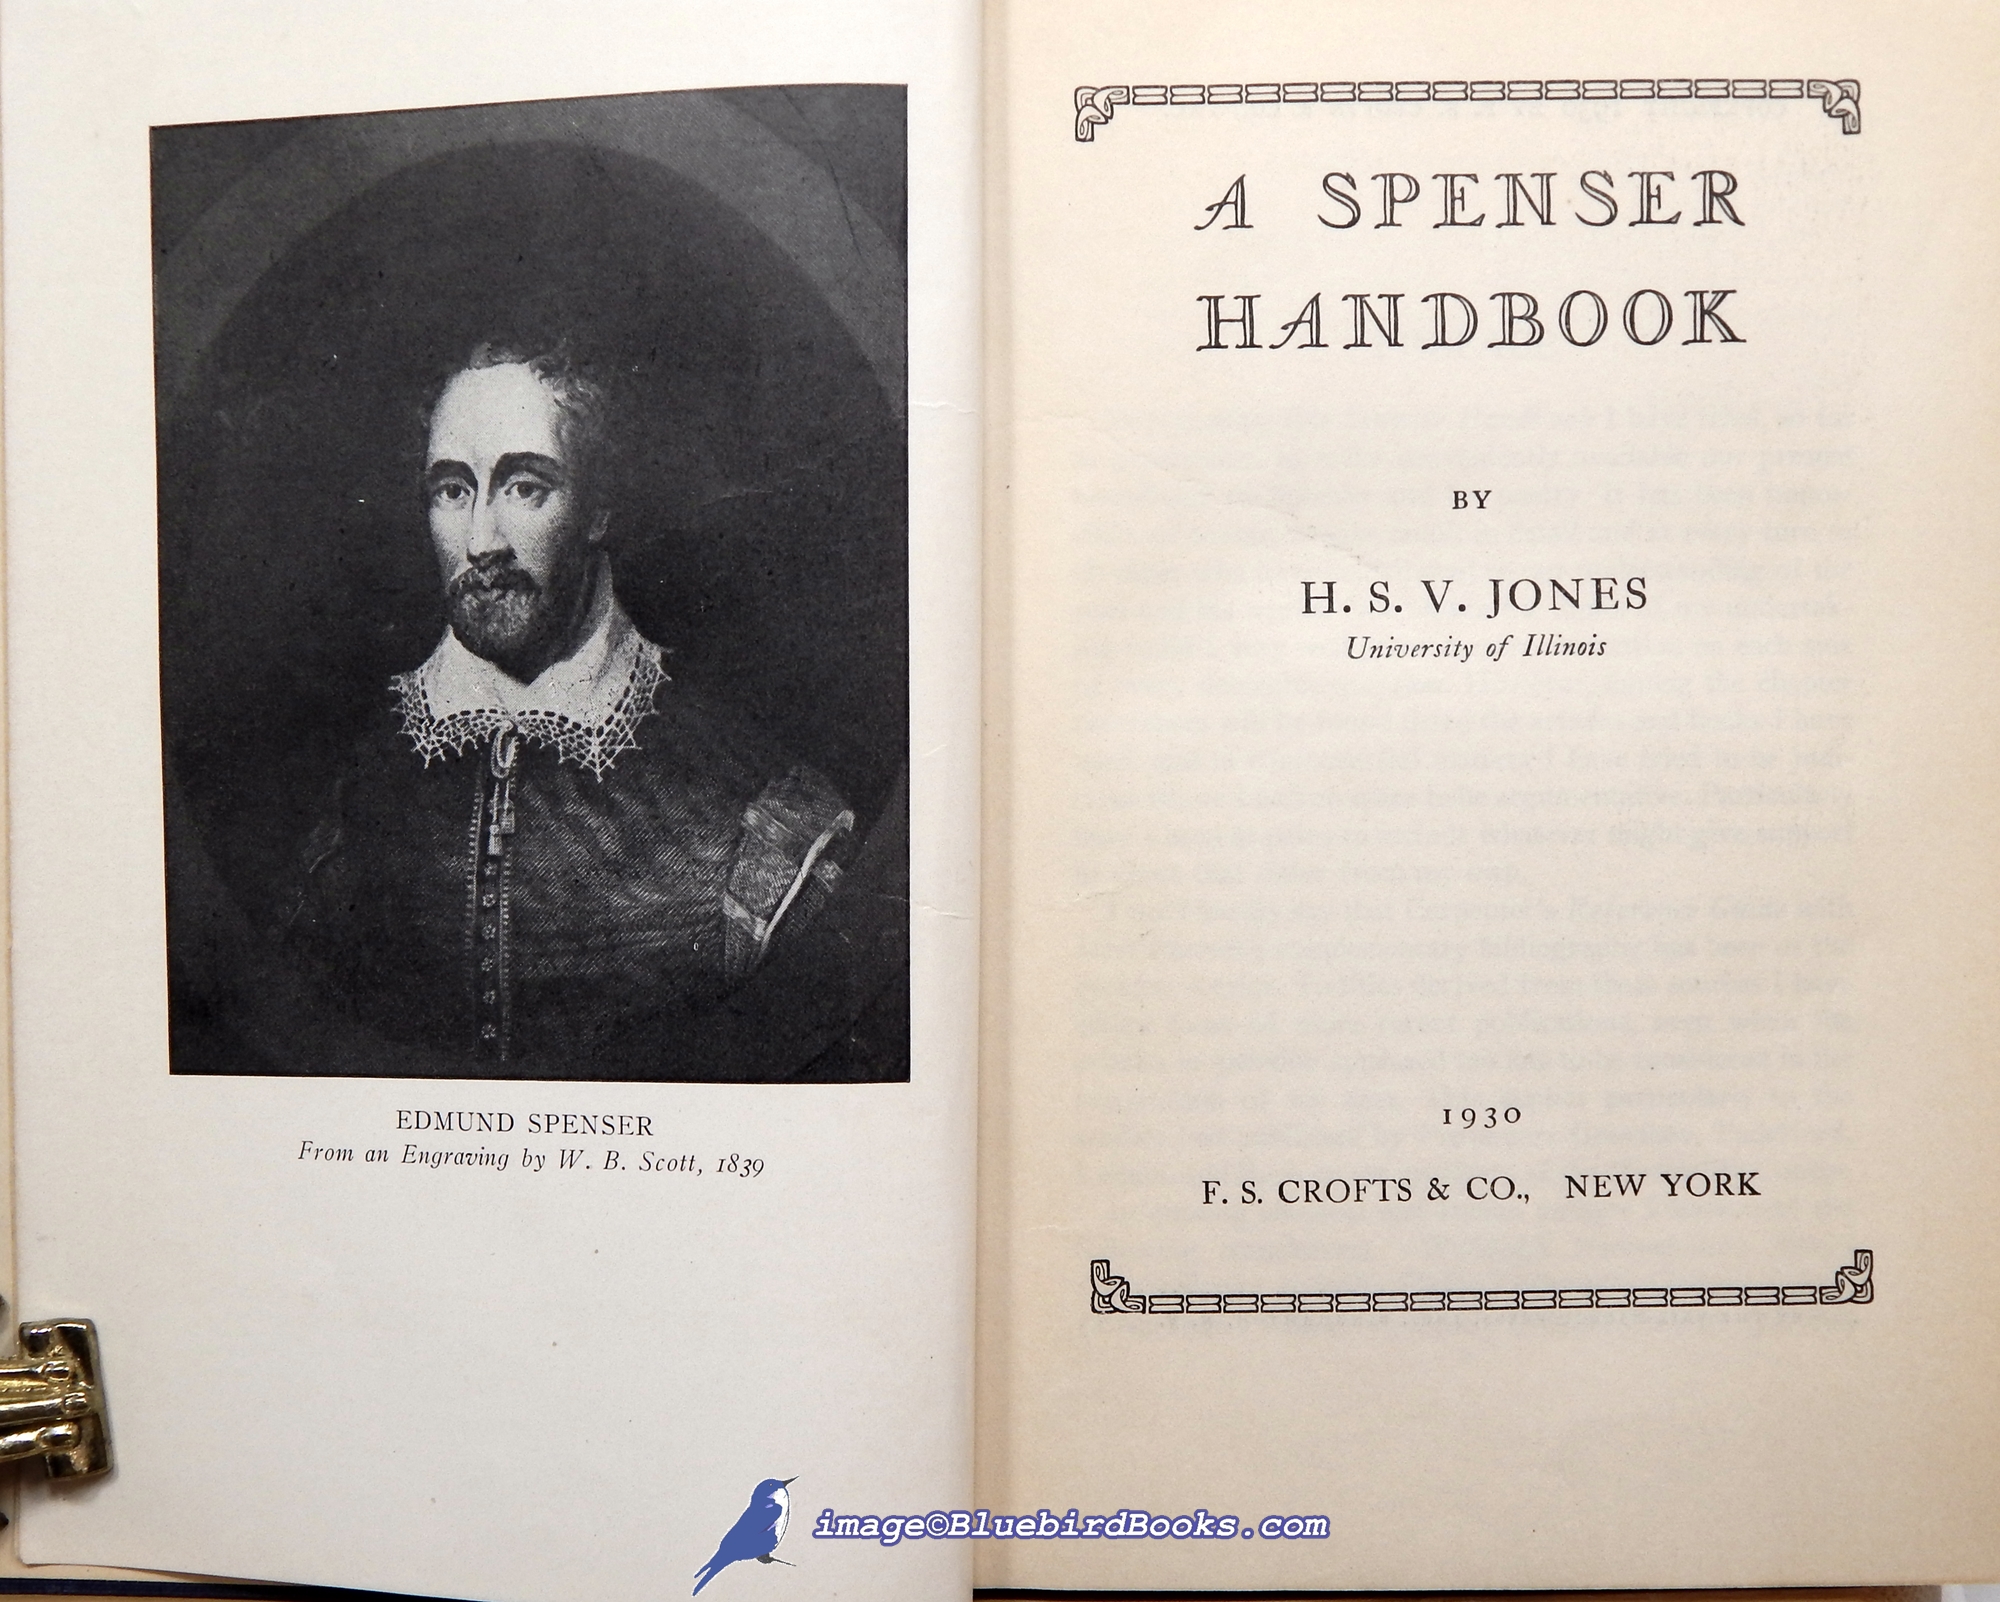 JONES, H. S. V. - A Spenser Handbook